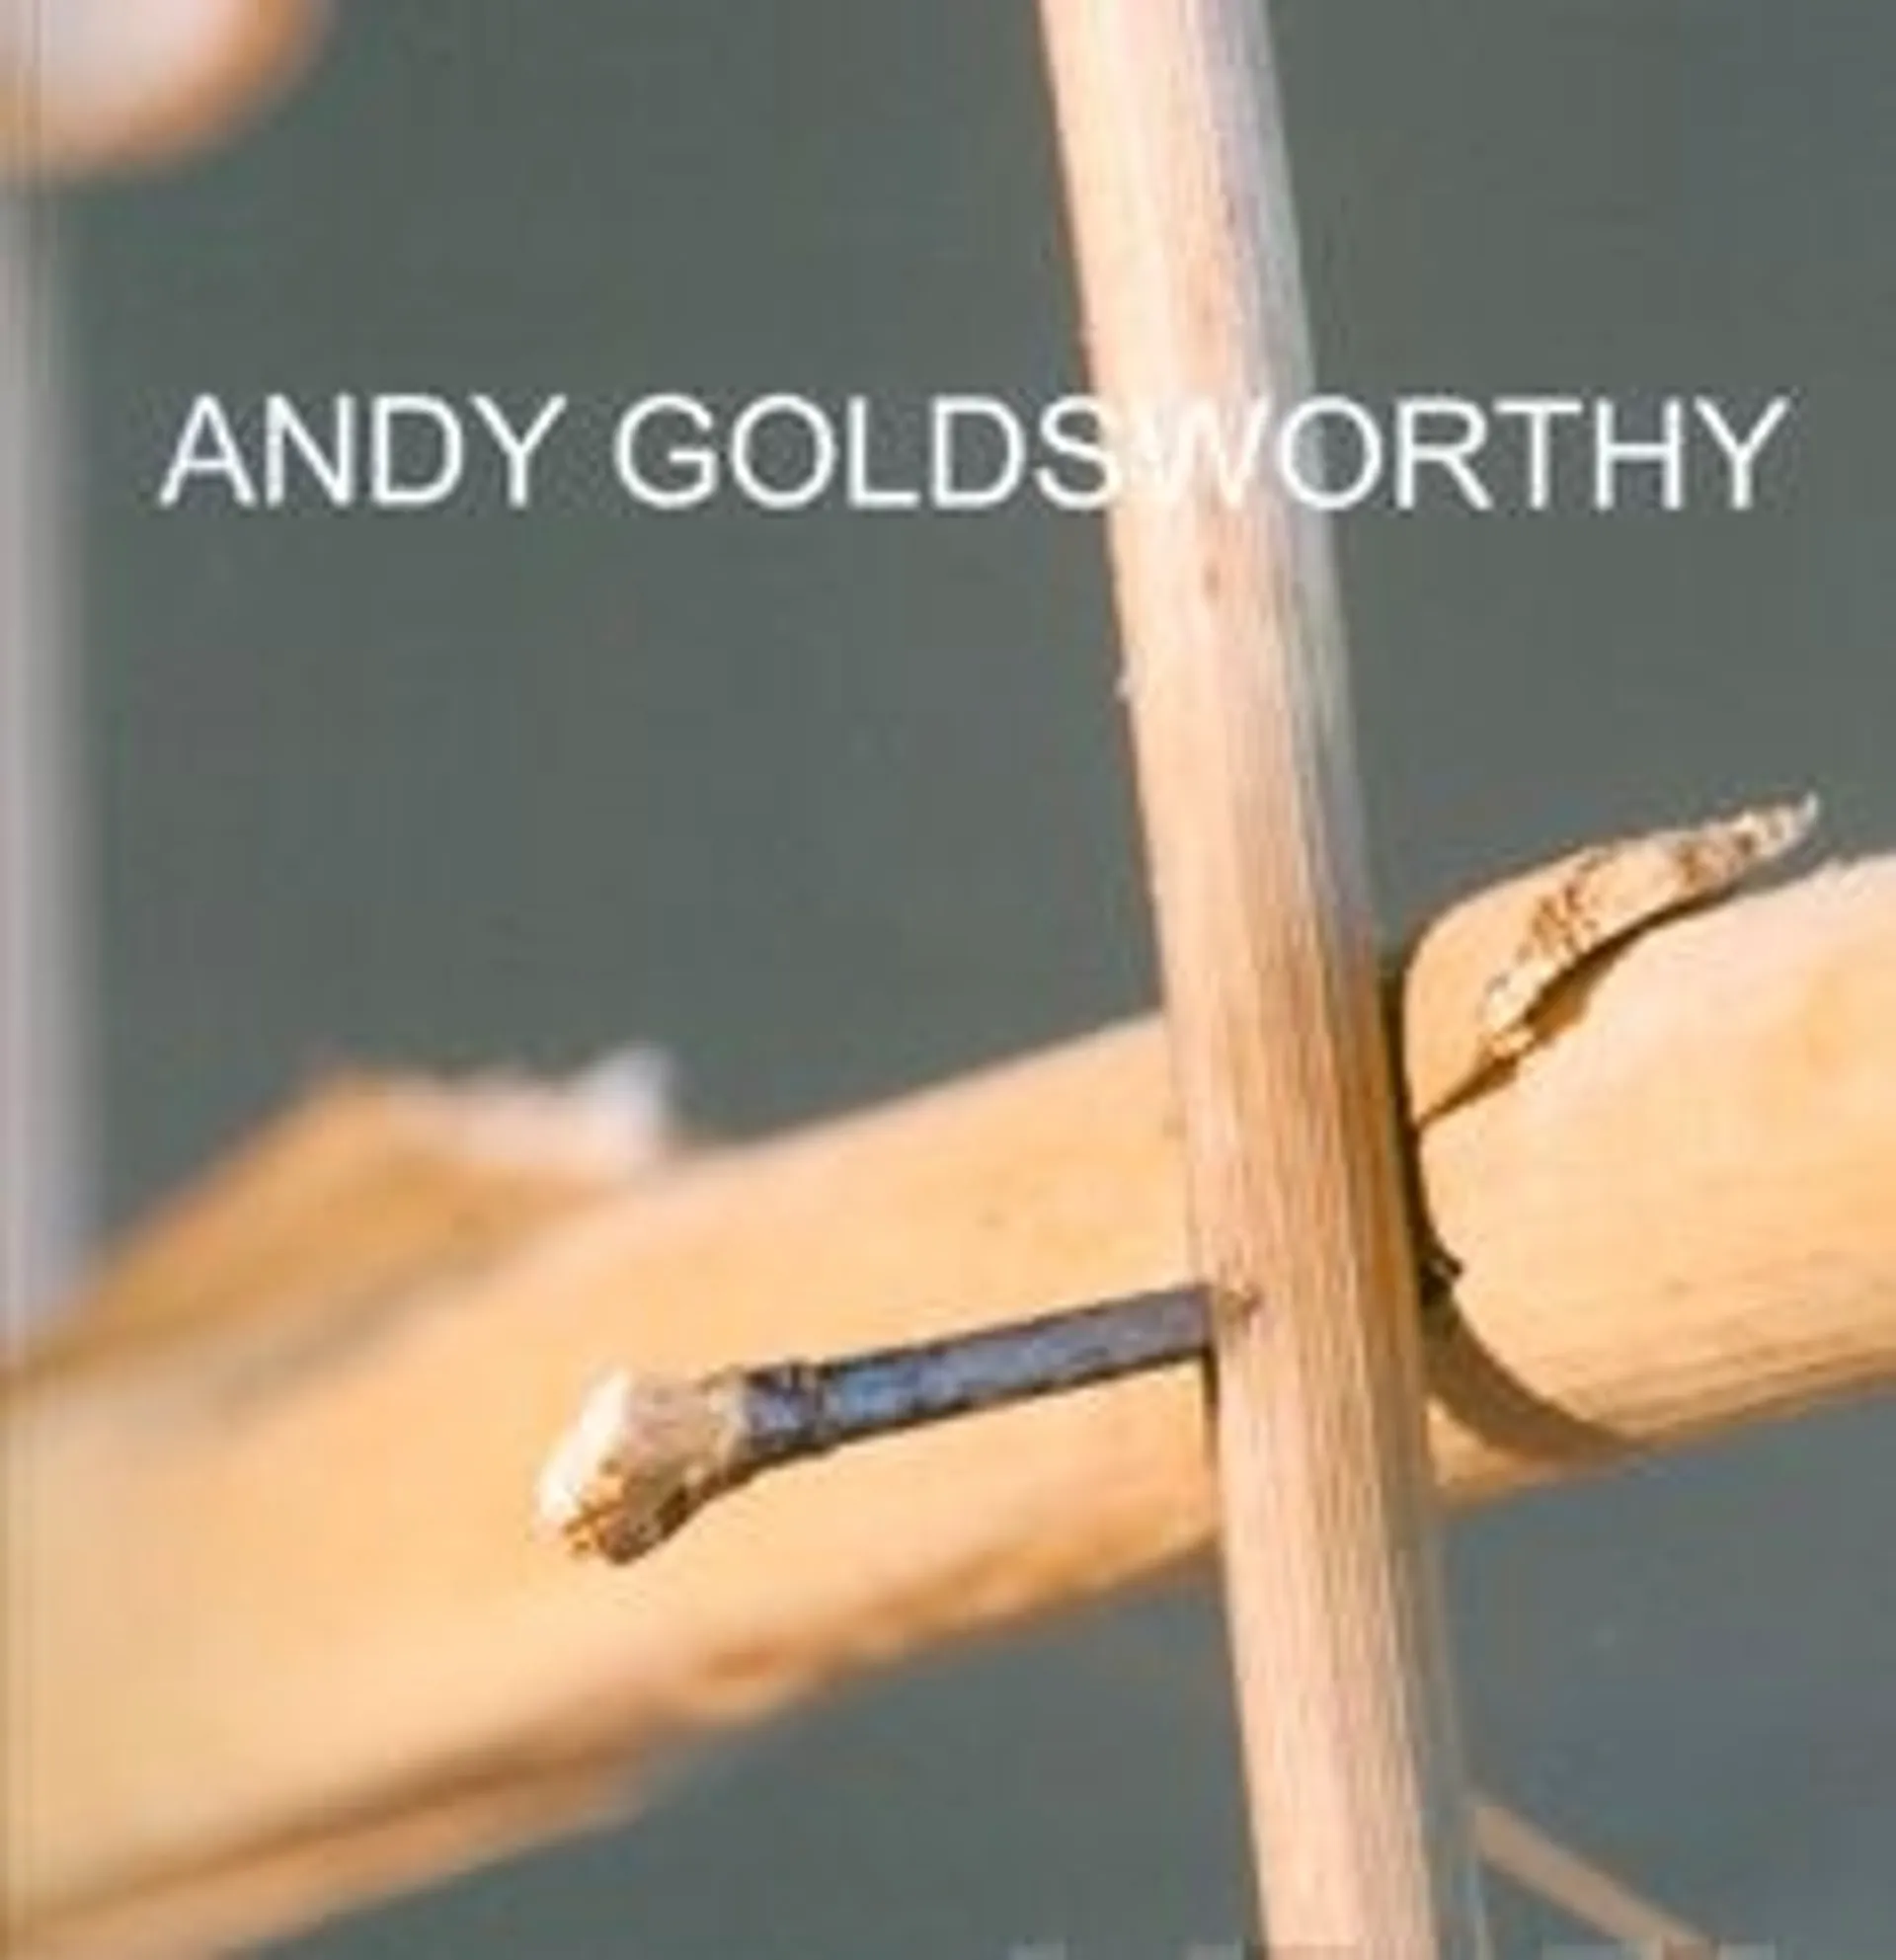 Kennedy, Andy Goldsworthy